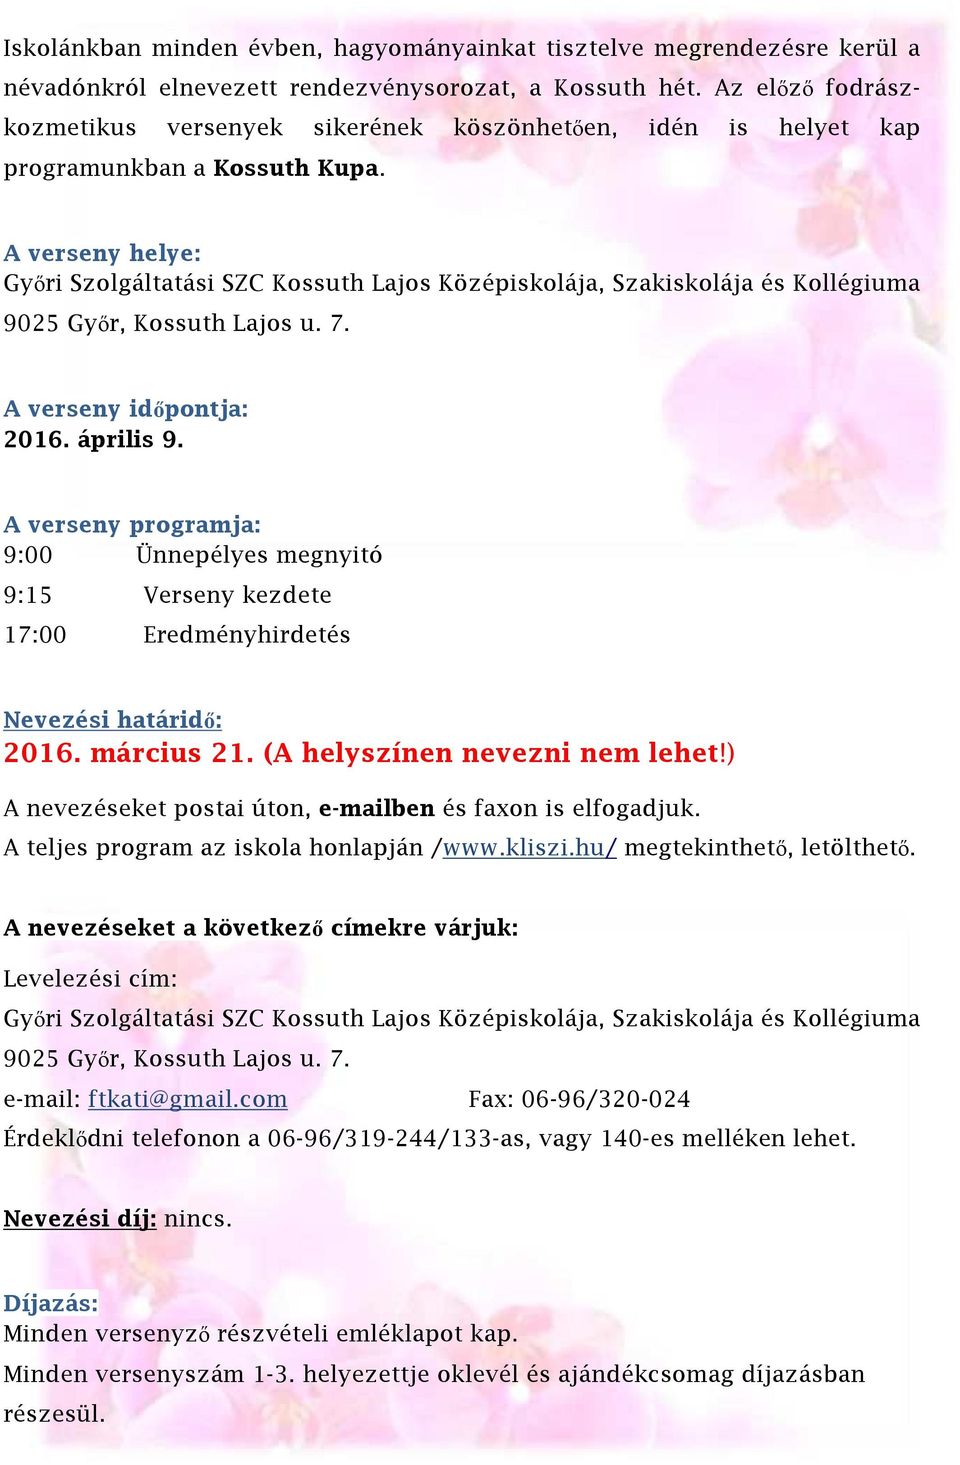 A verseny helye: Győri Szolgáltatási SZC Kossuth Lajos Középiskolája, Szakiskolája és Kollégiuma 9025 Győr, Kossuth Lajos u. 7. A verseny időpontja: 2016. április 9.